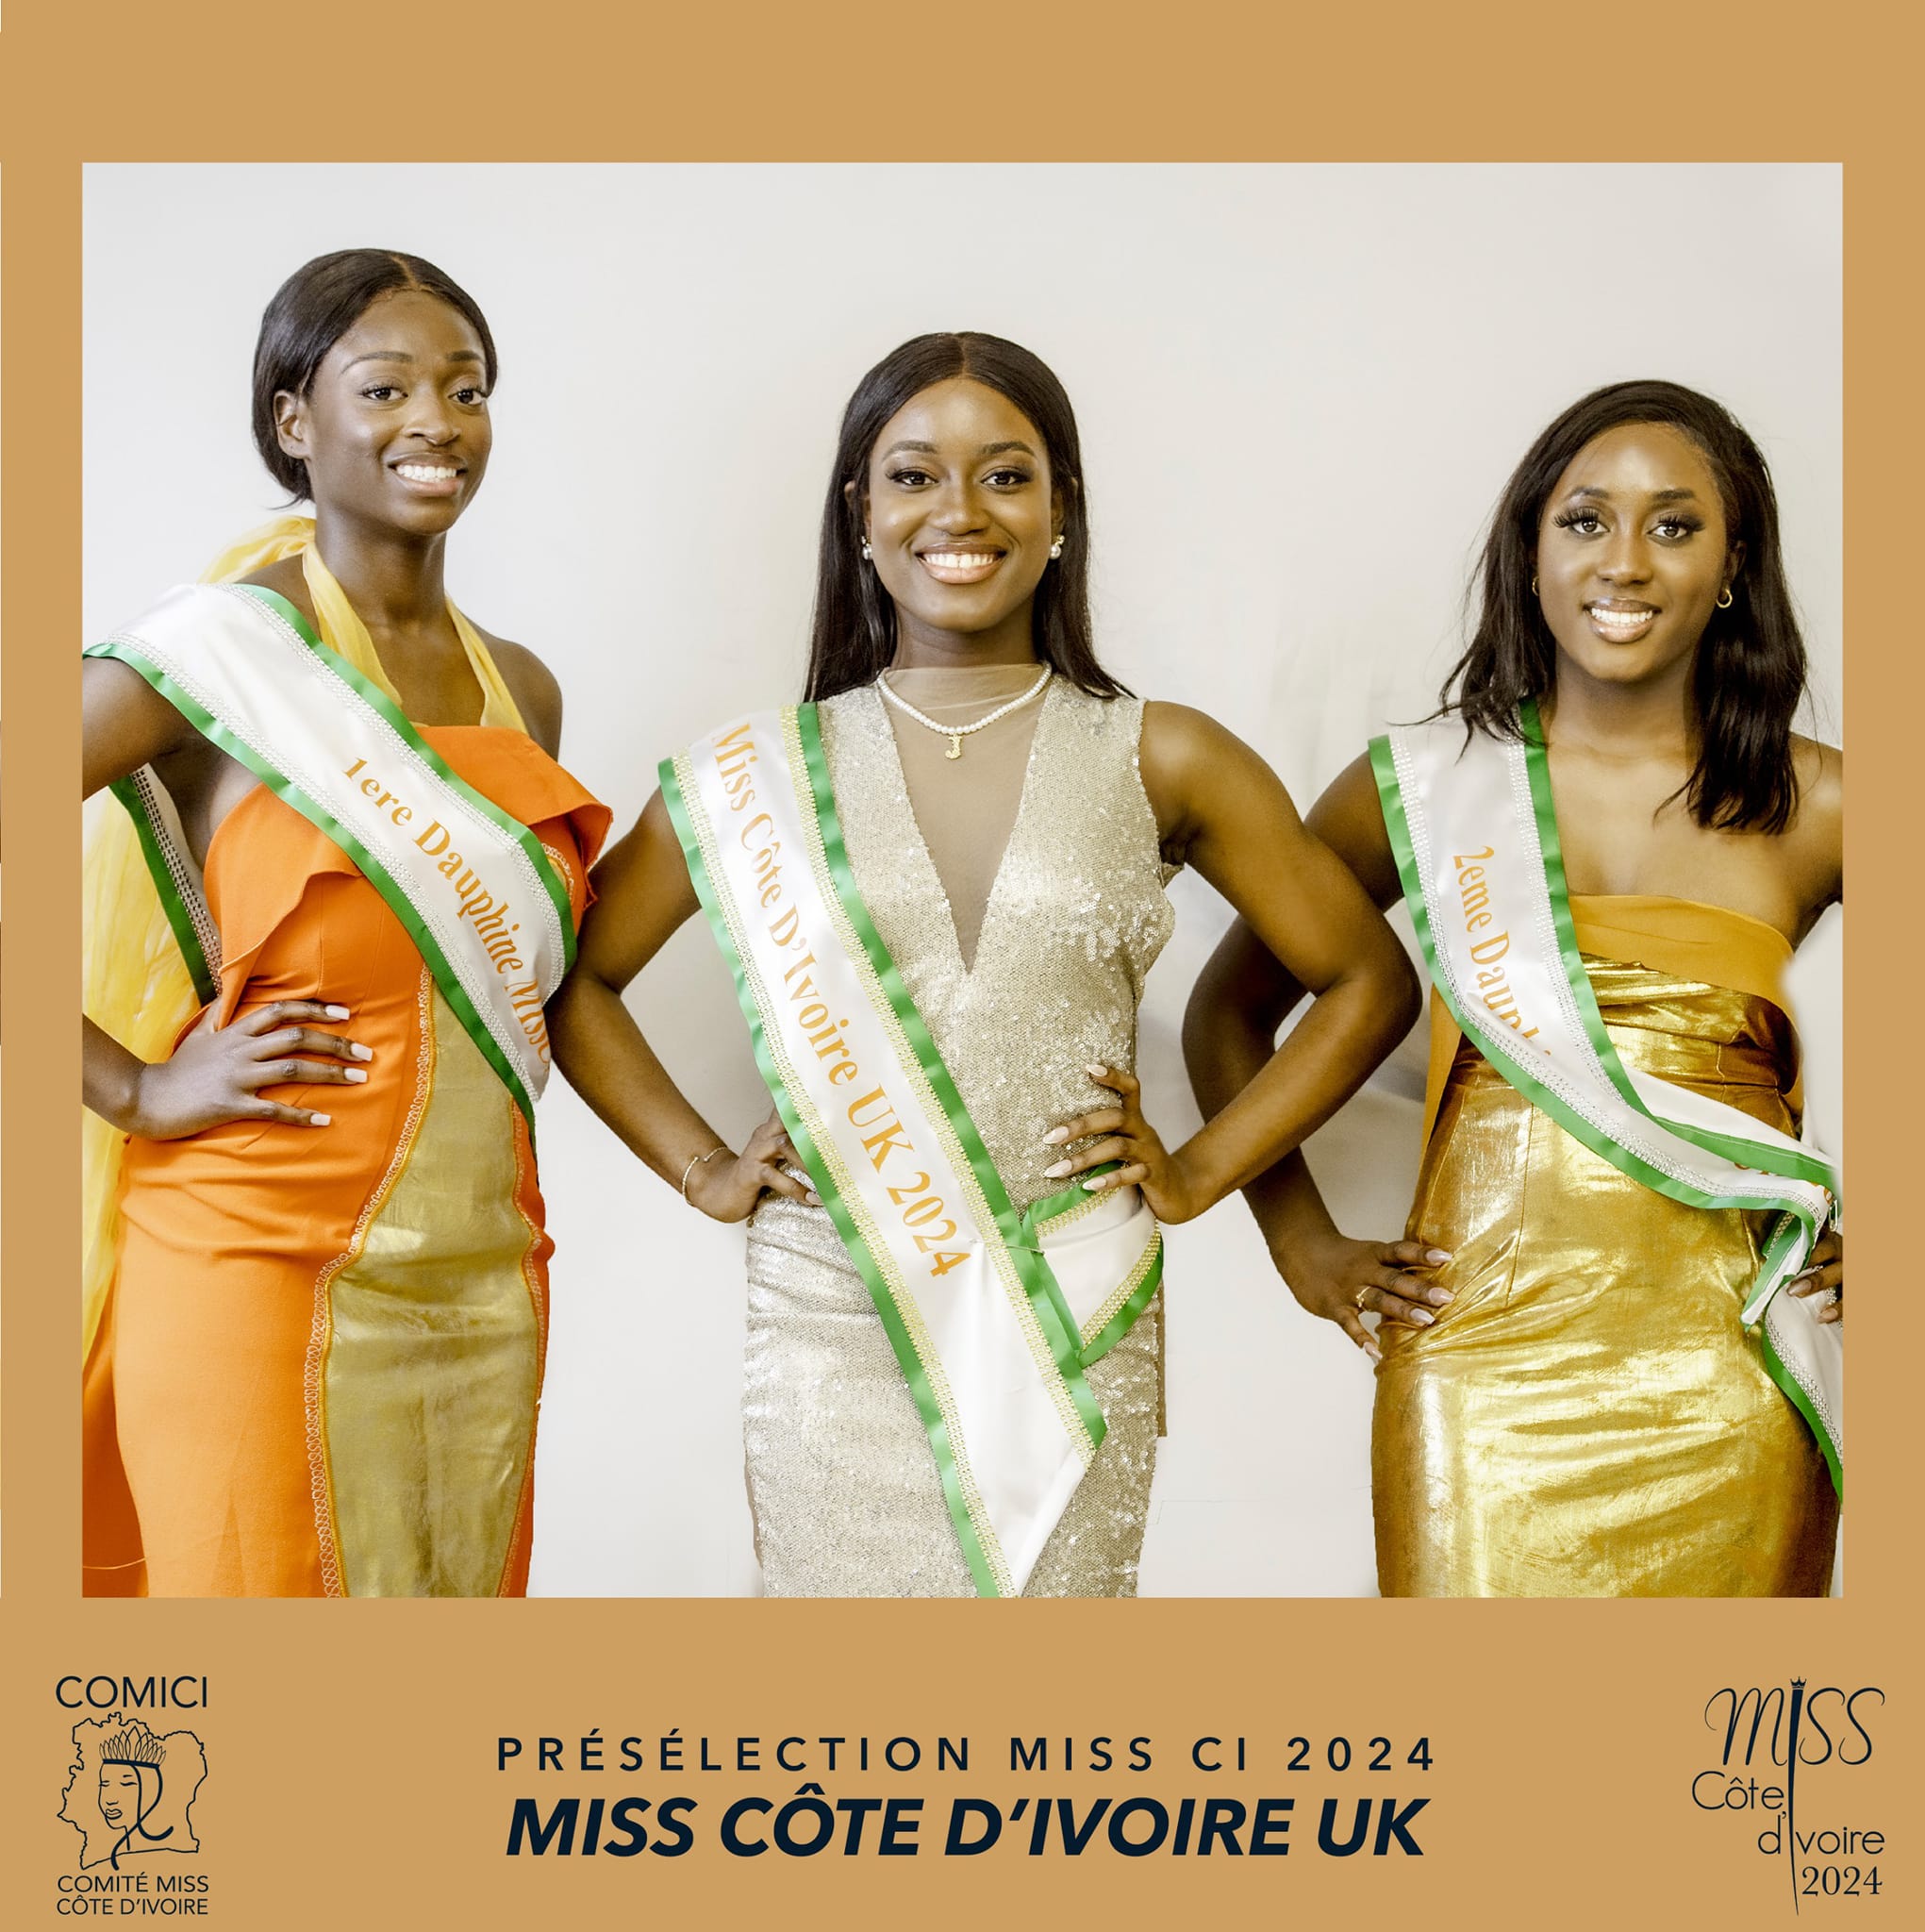 Preselection from London - UK Miss Cote d'Ivoire - Marie Keren Kra - April 27 2024